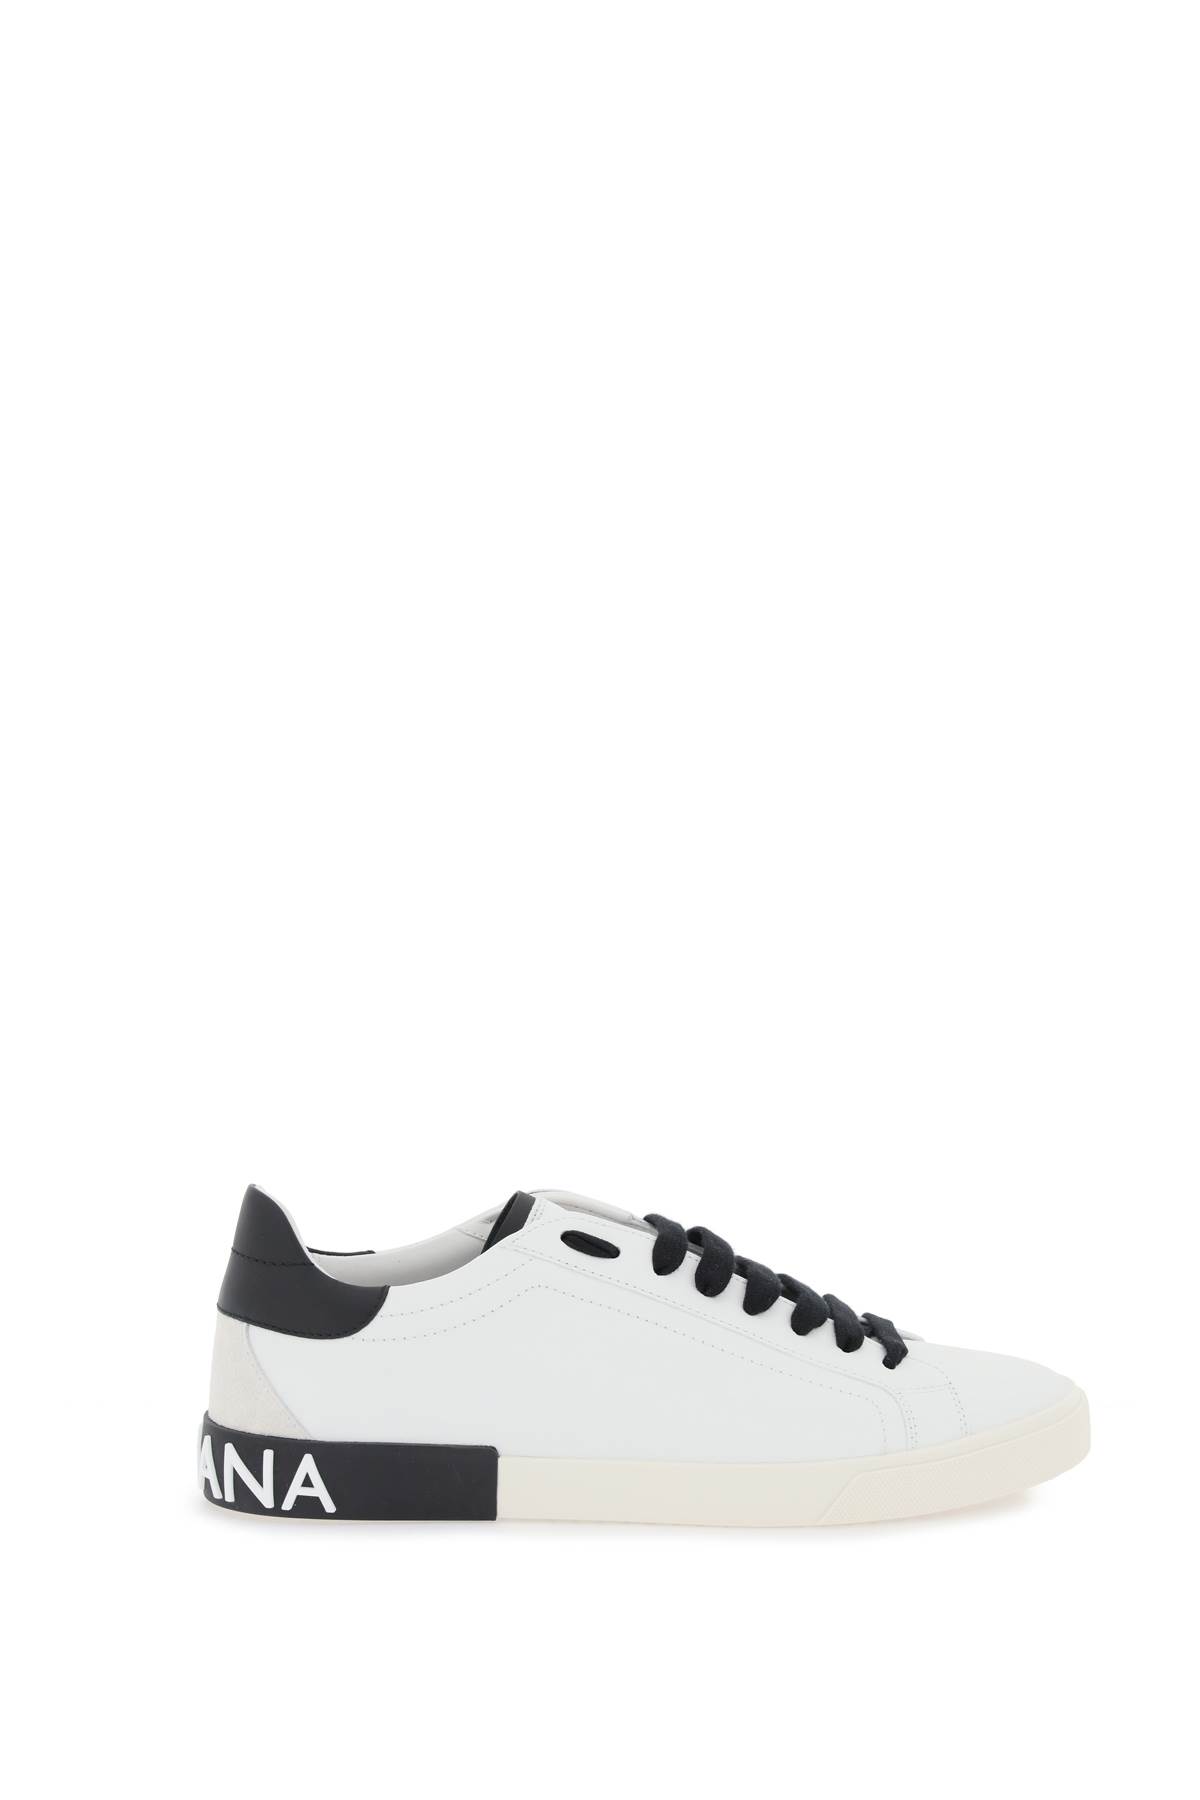 Shop Dolce & Gabbana Portofino Nappa Leather Sneakers In White/black